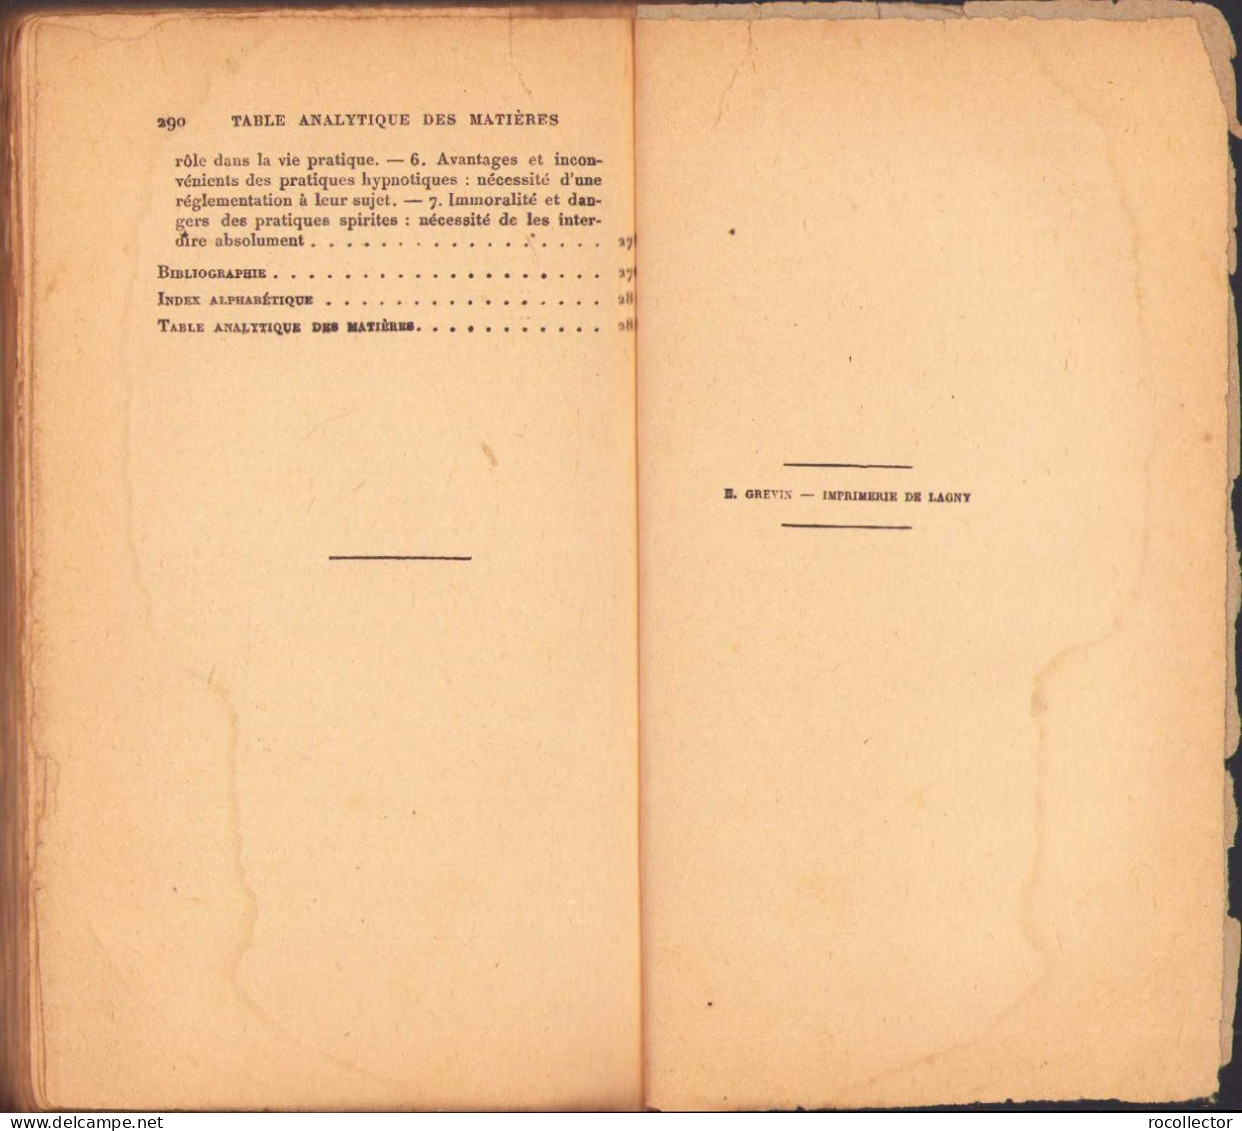 L’hypnotisme et le spiritisme. Étude médico-critique par dr. Joseph Lapponi, 1920, Paris 244SP